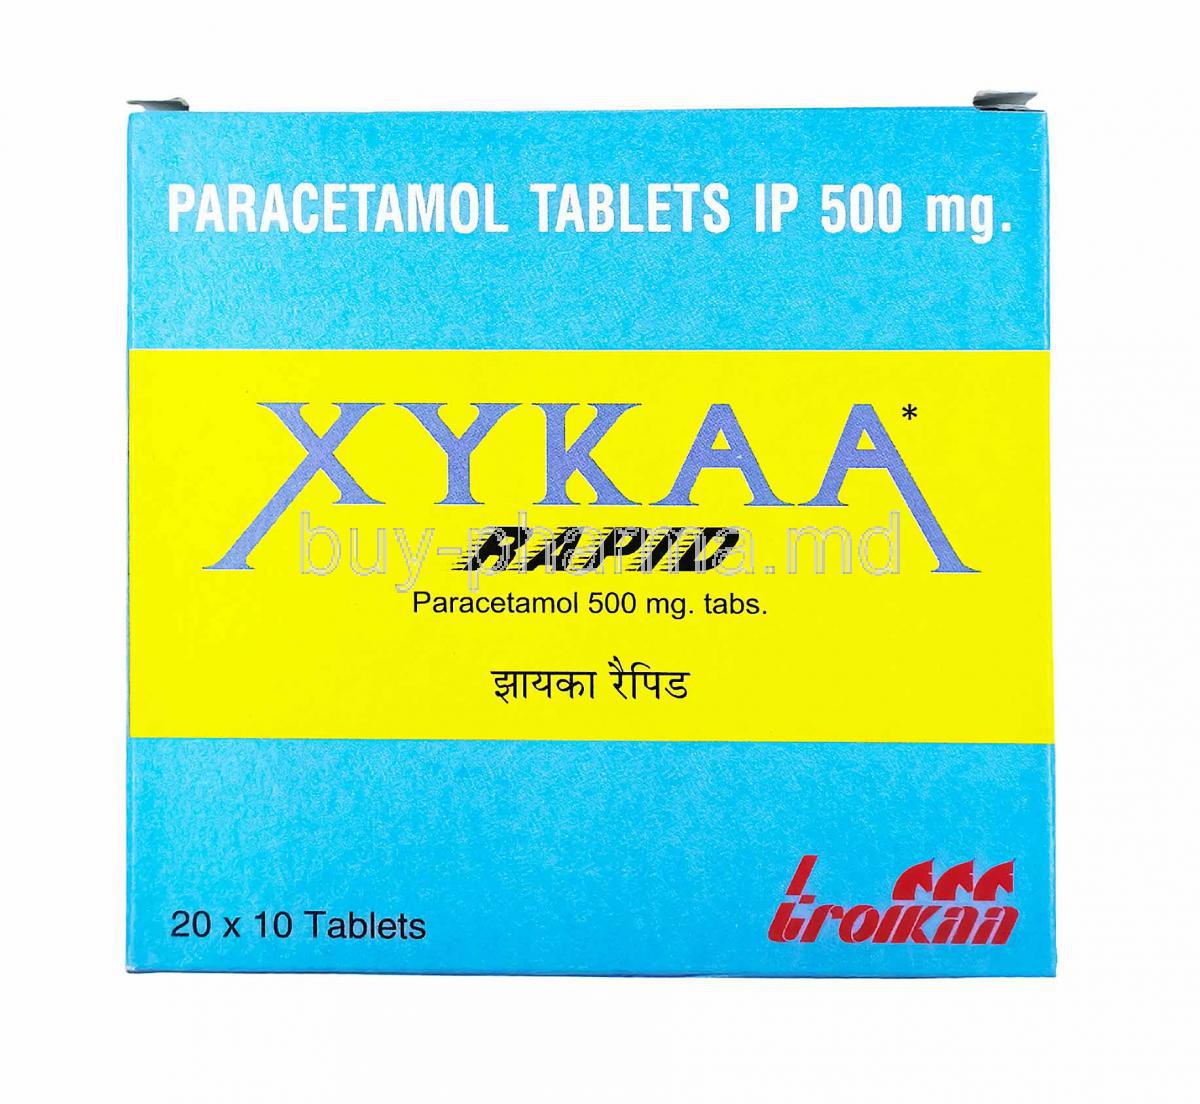 Xykaa Rapid, Paracetamol 500mg